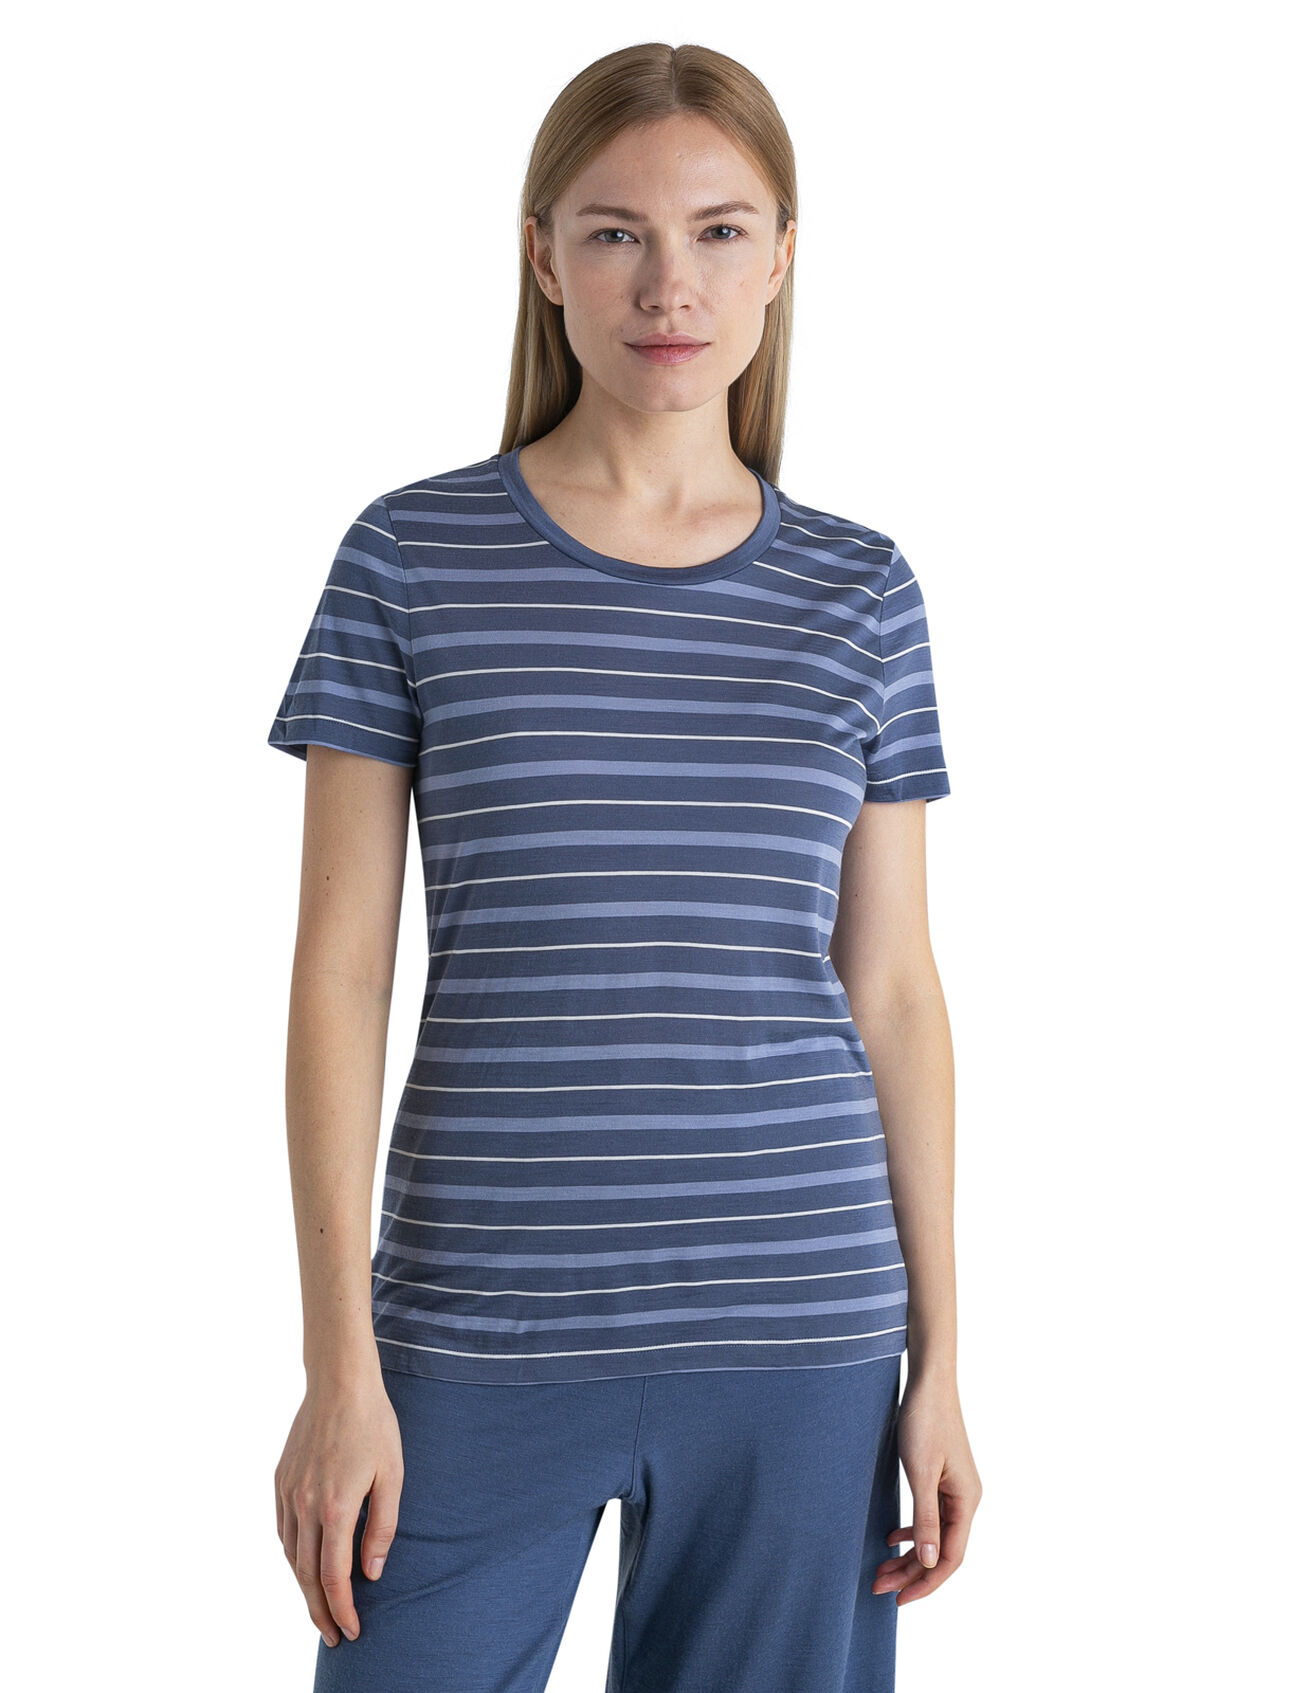 Dames Gestreept Wave T-shirt van merinowolmix De Wave is een gestreept T-shirt met korte mouwen. De top heeft een klassieke stijl en is gemaakt van een lichtgewicht merinowolmix van onze ademende en natuurlijke Cool-Lite™ jersey, perfect voor warm weer.